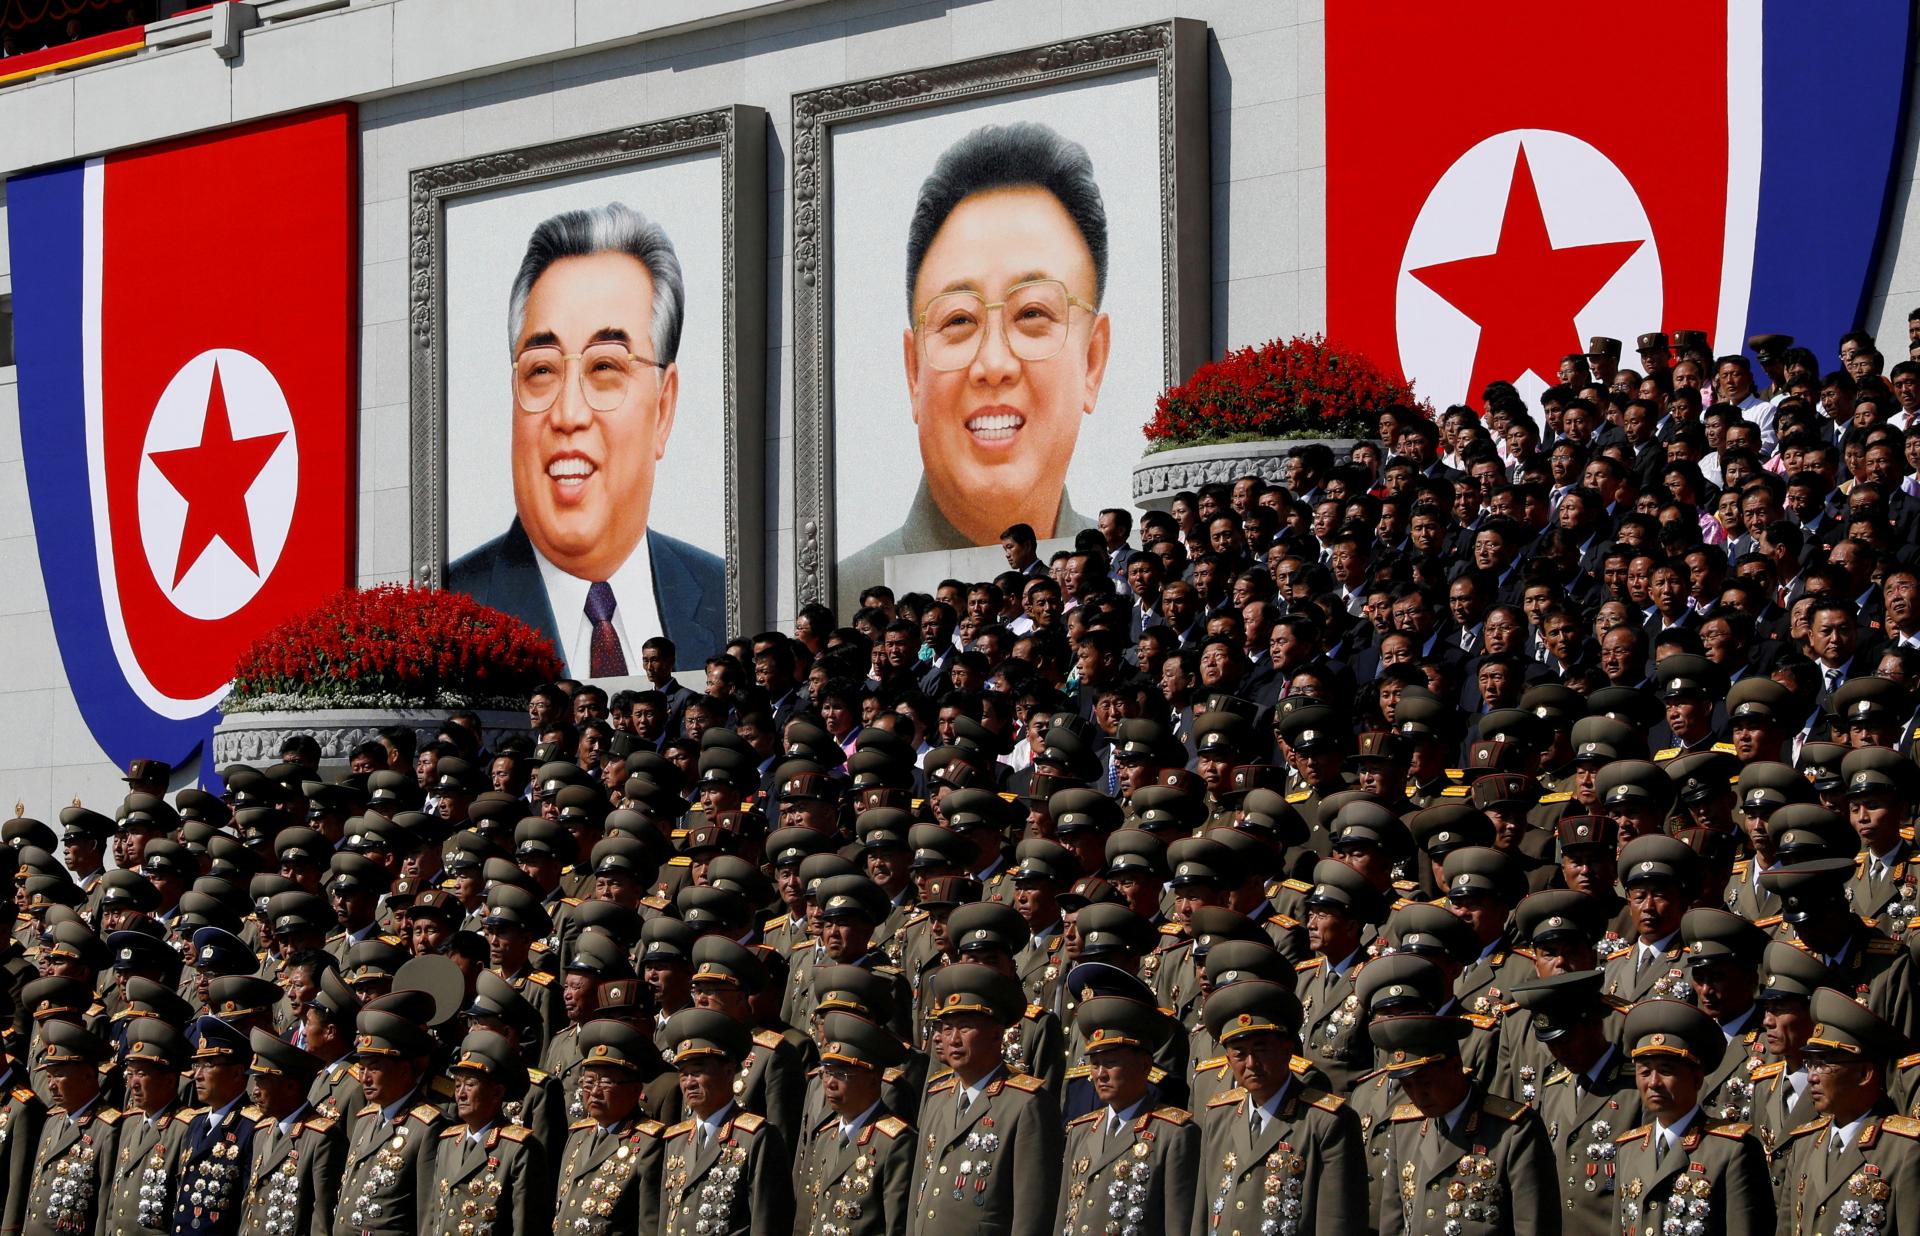 Severokórejská armáda počas vojny zmasakrovala stovky veriacich, tvrdí Komisia pre pravdu a zmierenie